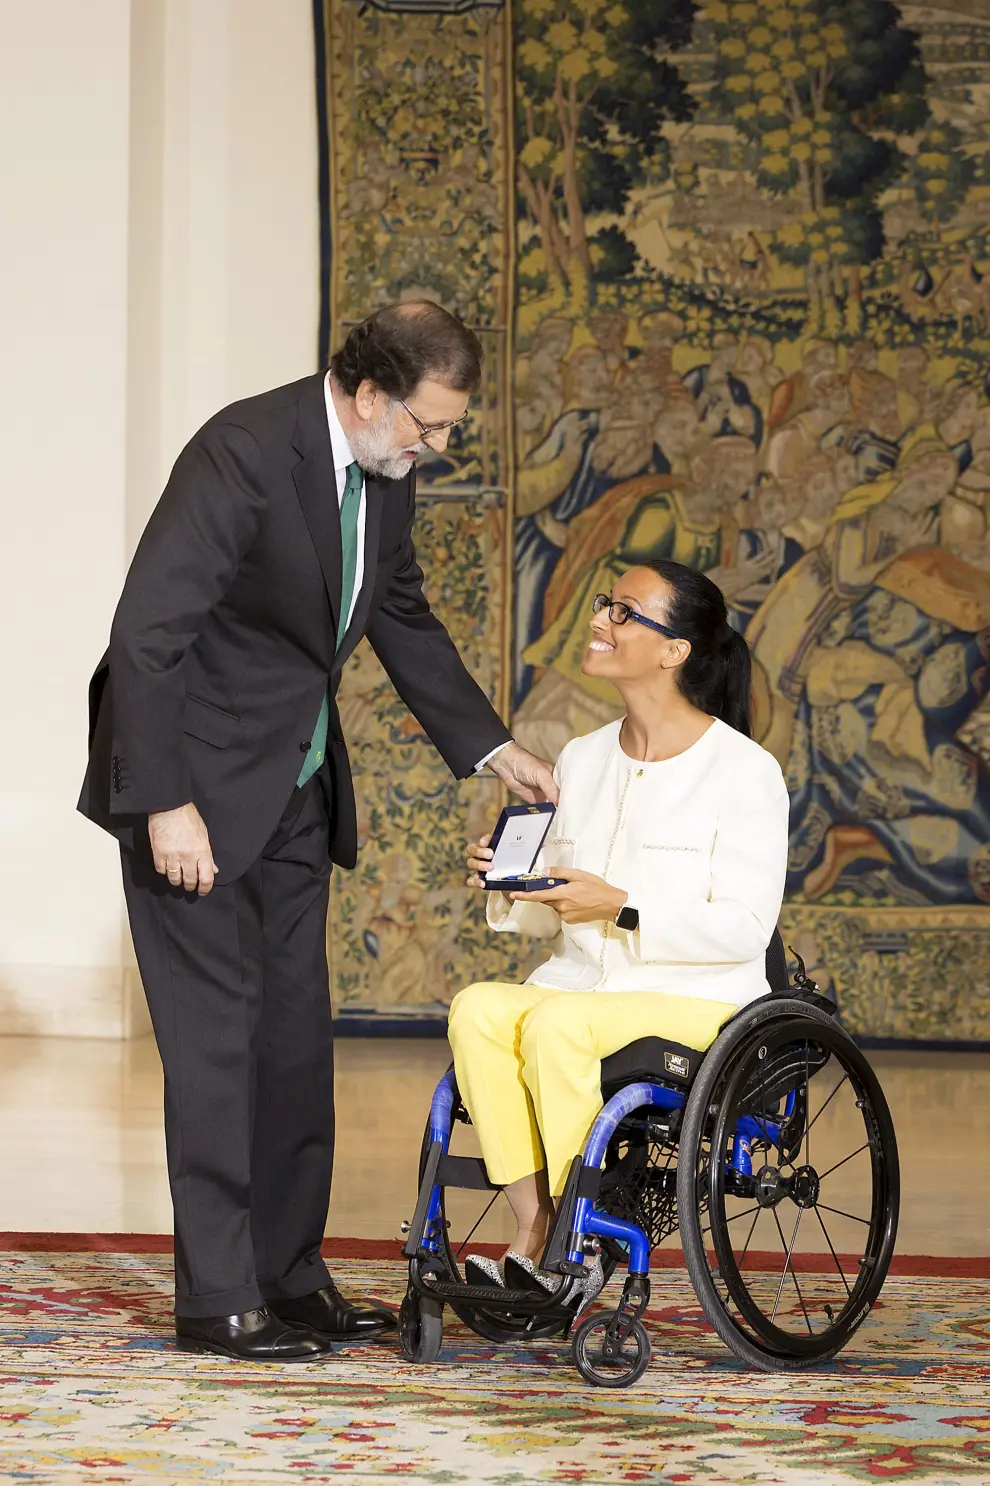 Teresa Perales, Medalla de Oro al Mérito en el Trabajo